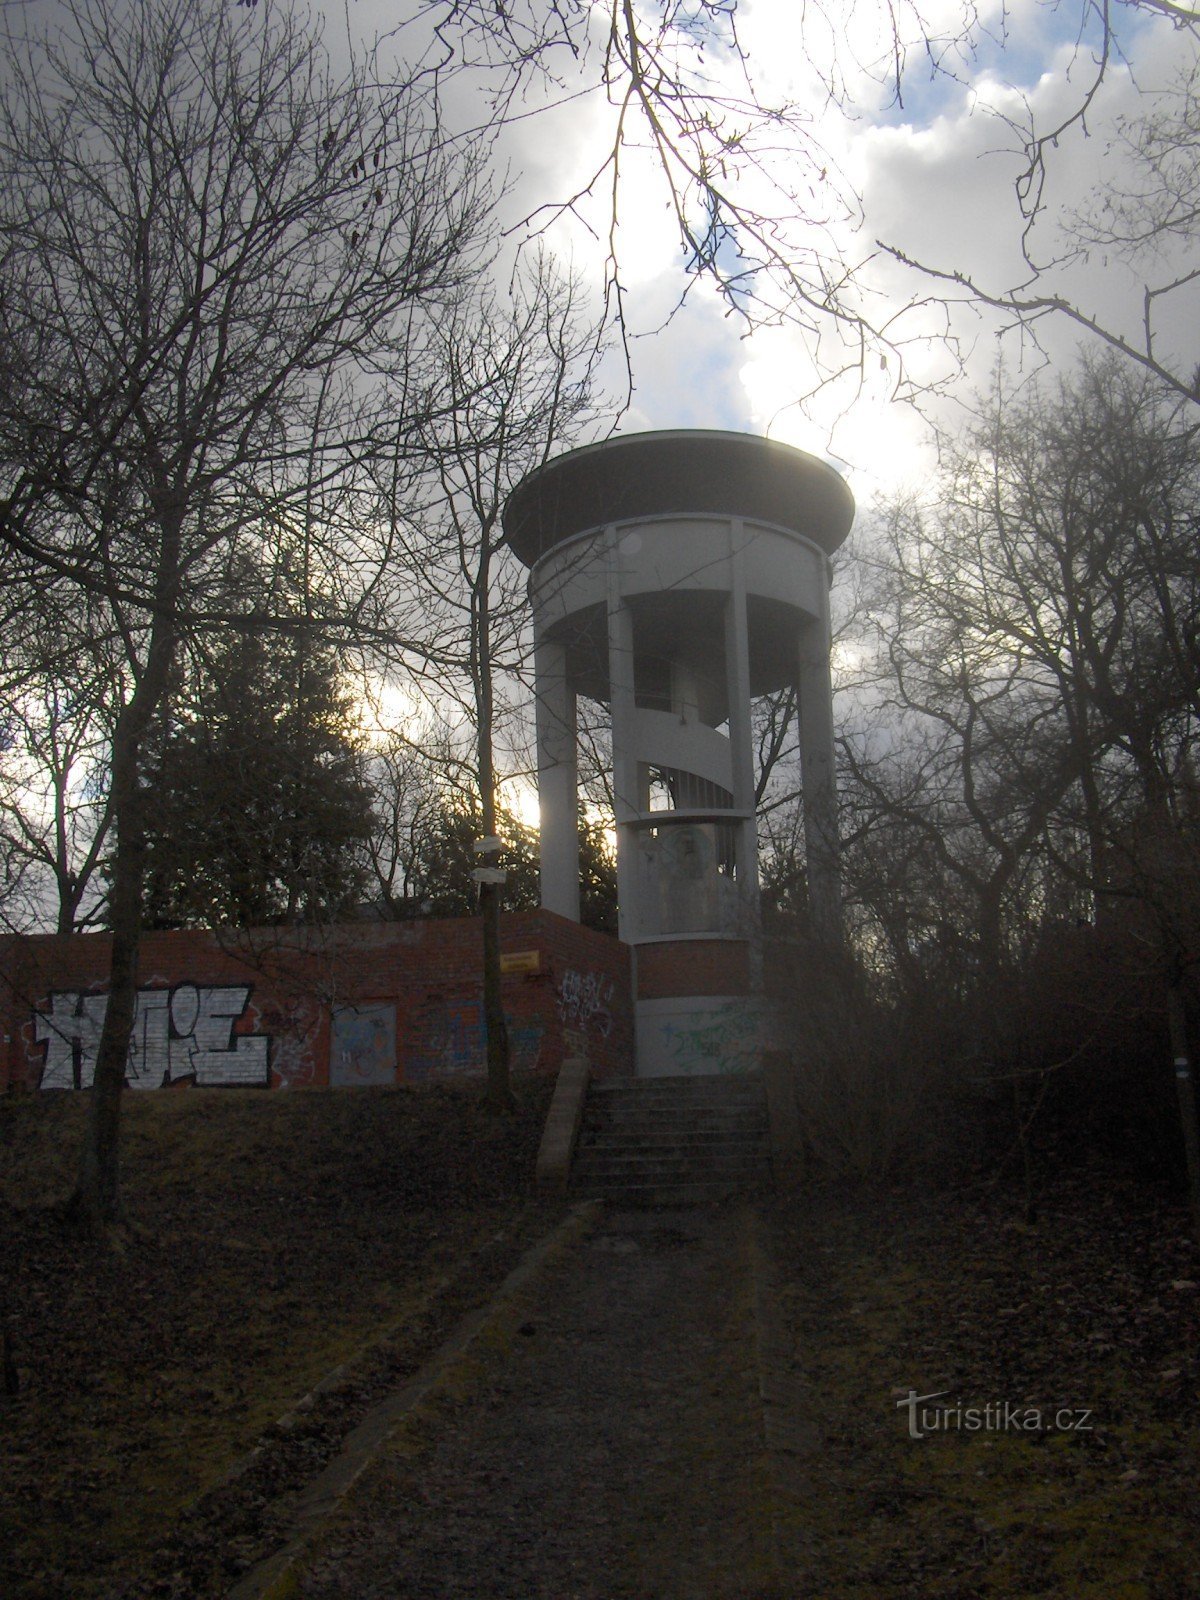 Ο πύργος επιφυλακής του Kratochvíl